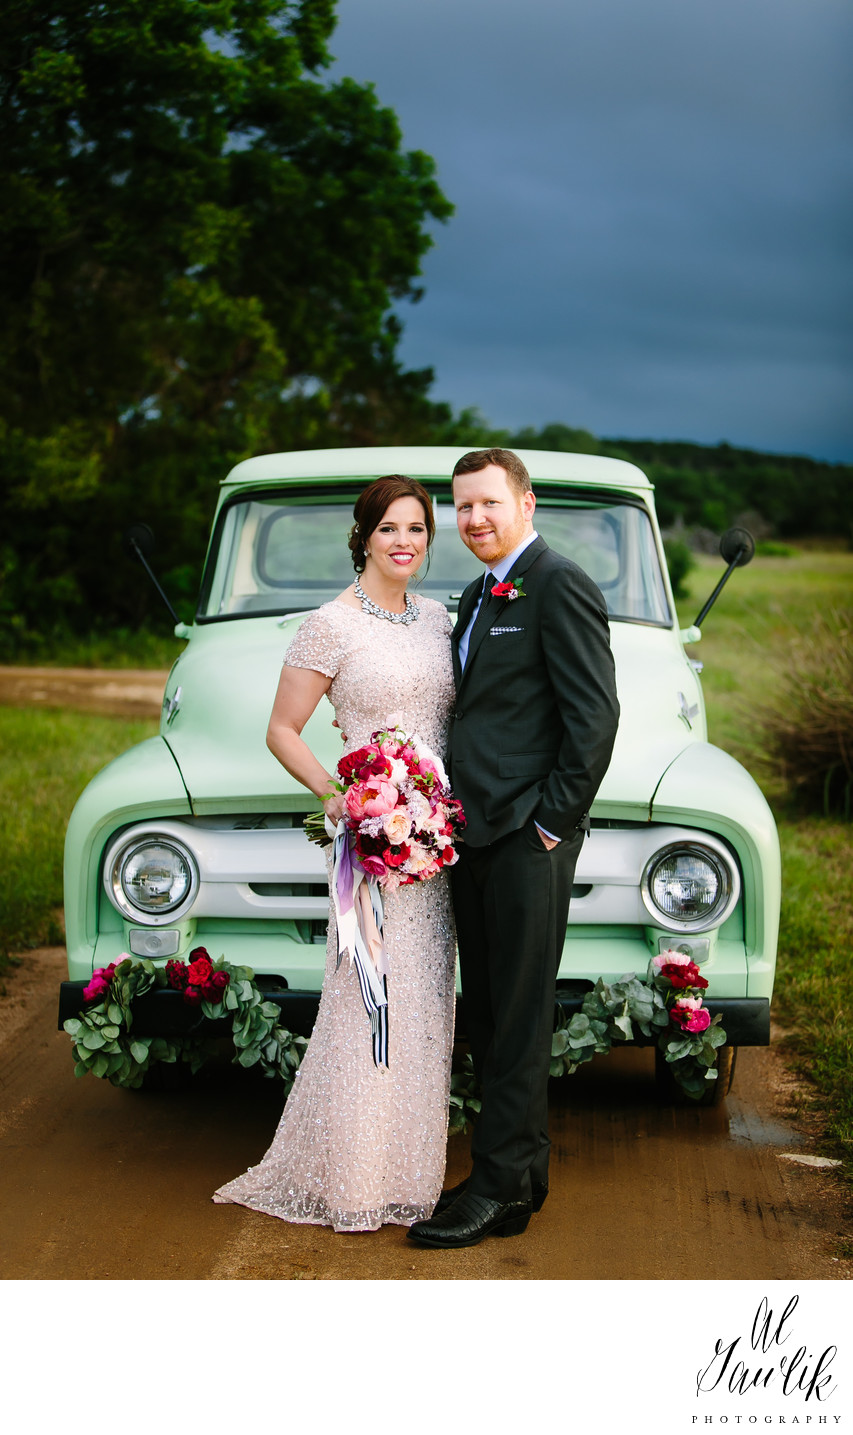 Pickup Truck, Flowers, Bride and Groom